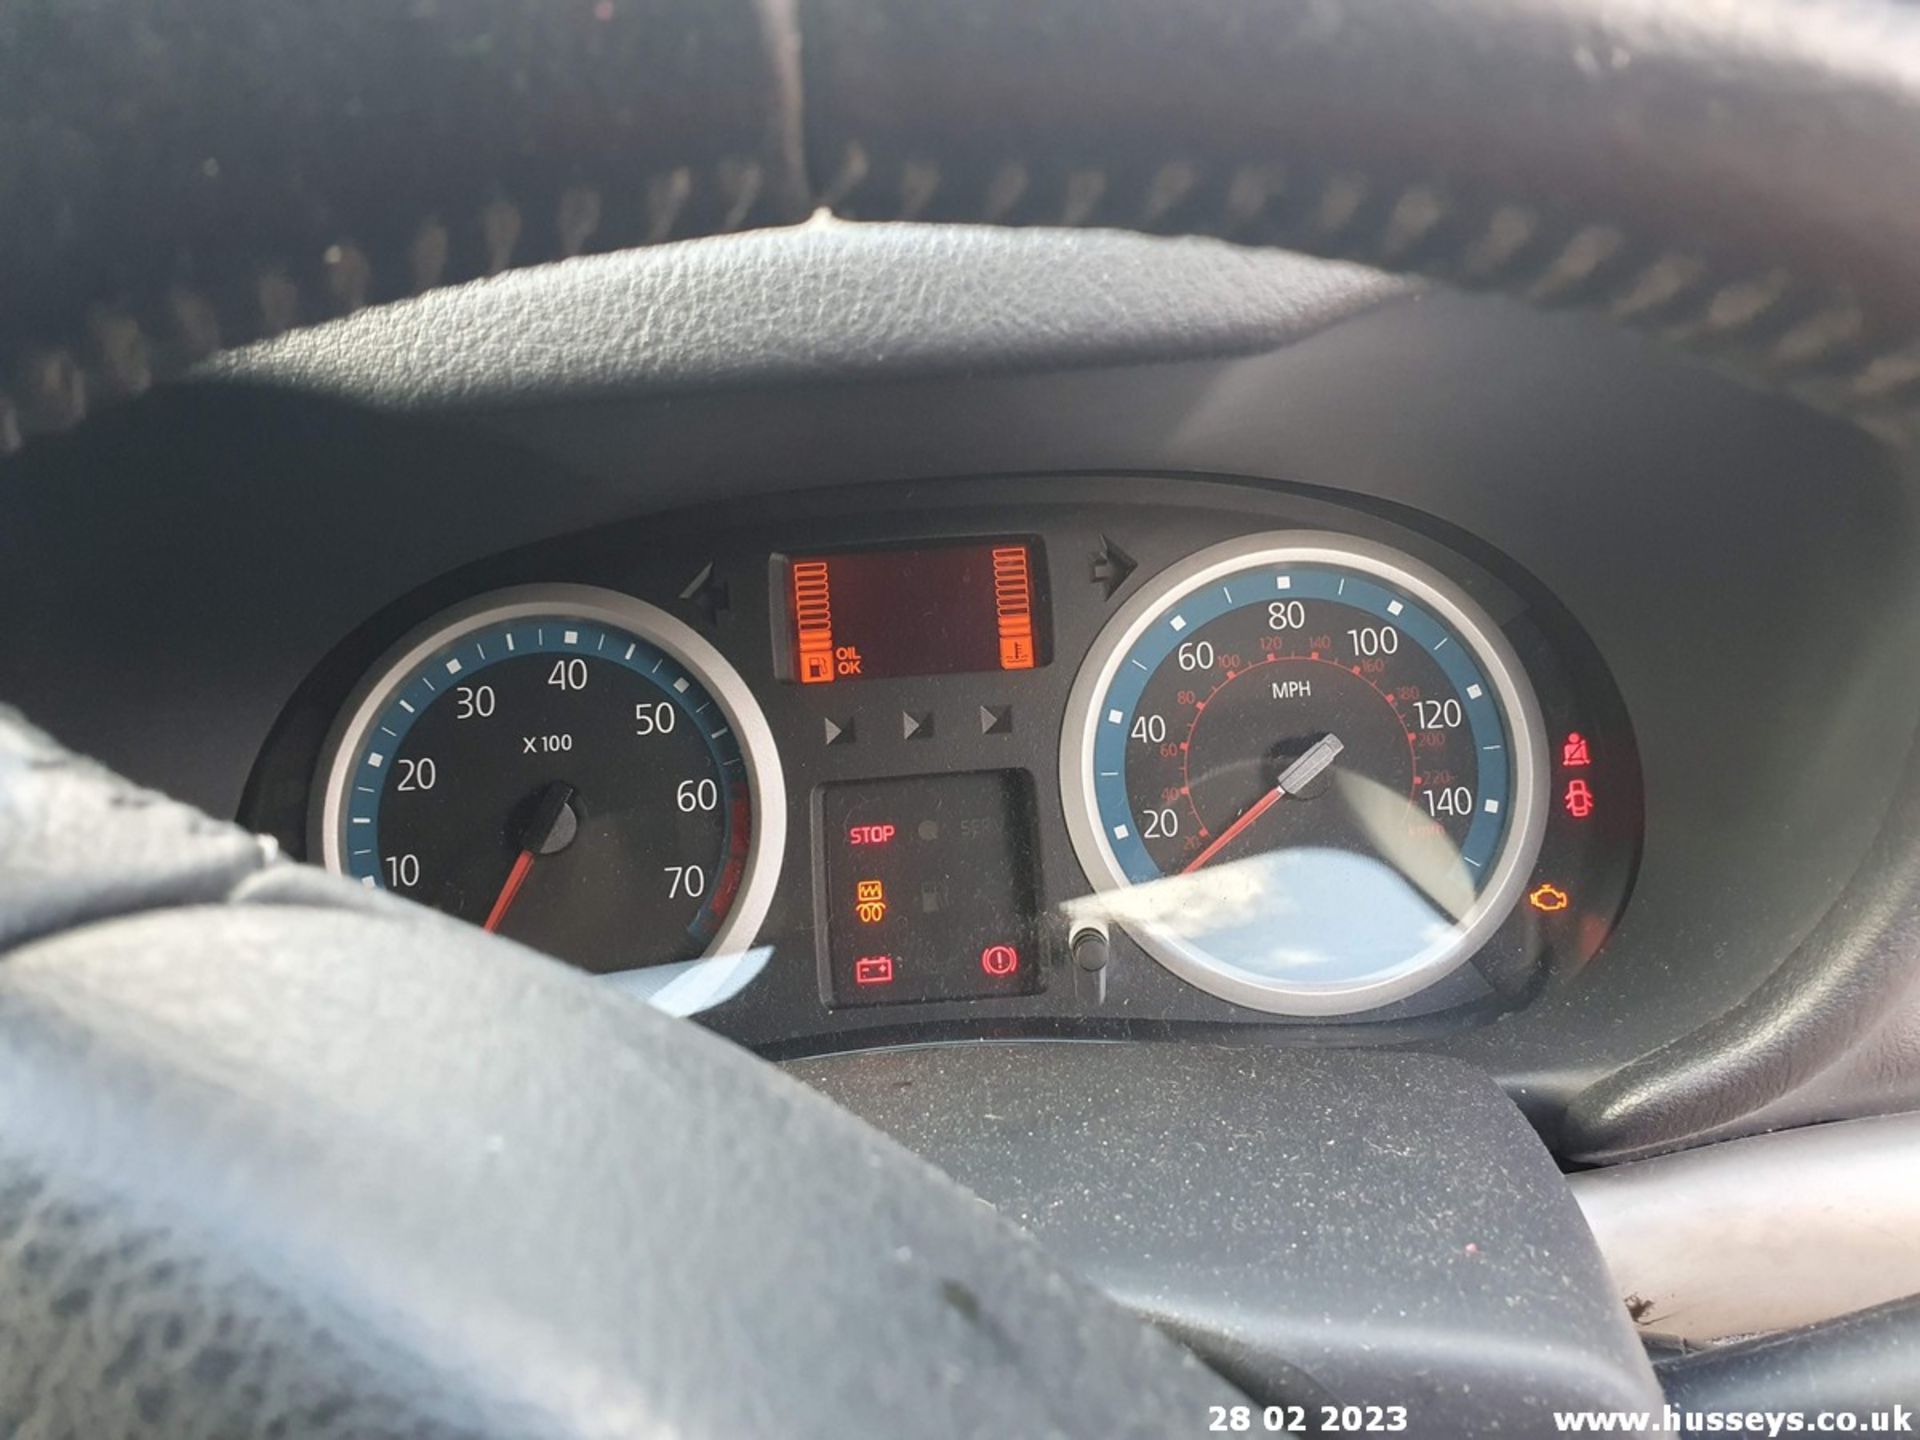 05/05 RENAULT CLIO EXTREME 16V - 1149cc 3dr Hatchback (Black, 961k) - Image 30 of 52